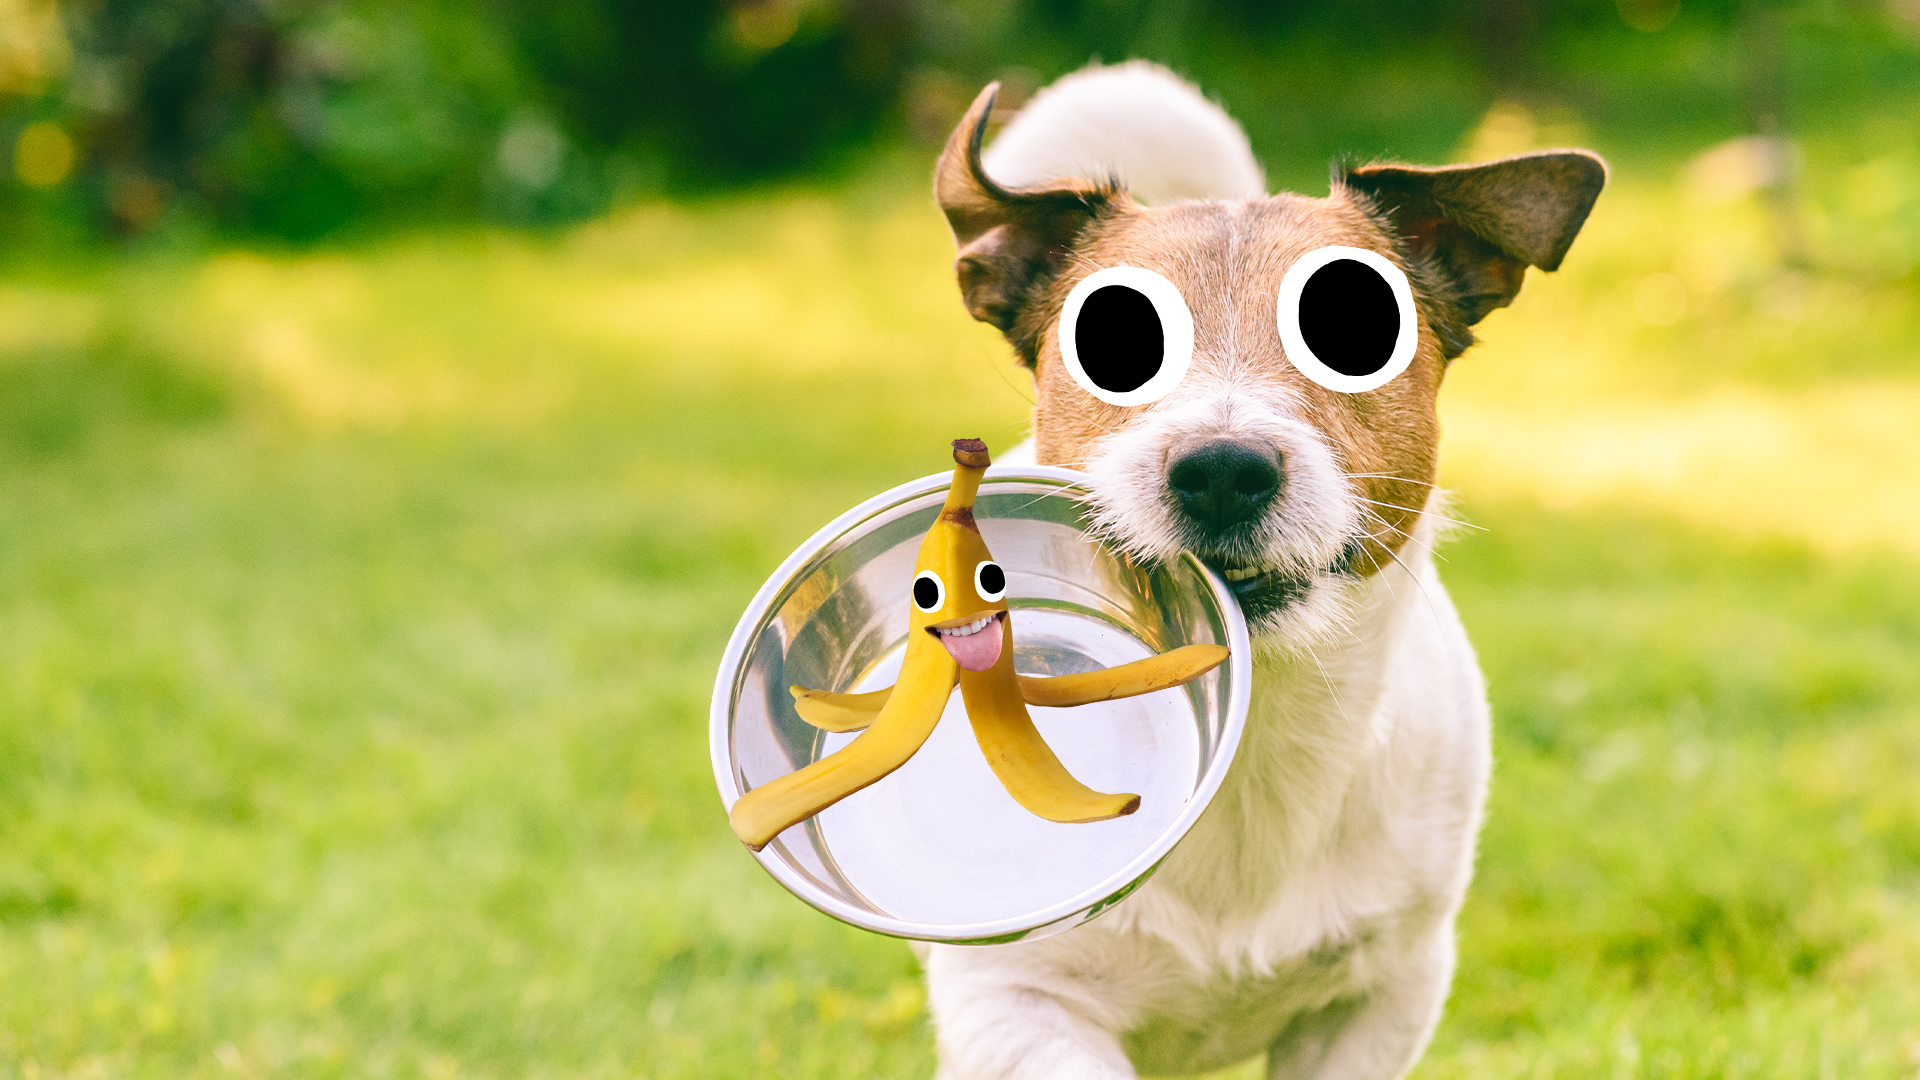 Dog with bowl and beano banana